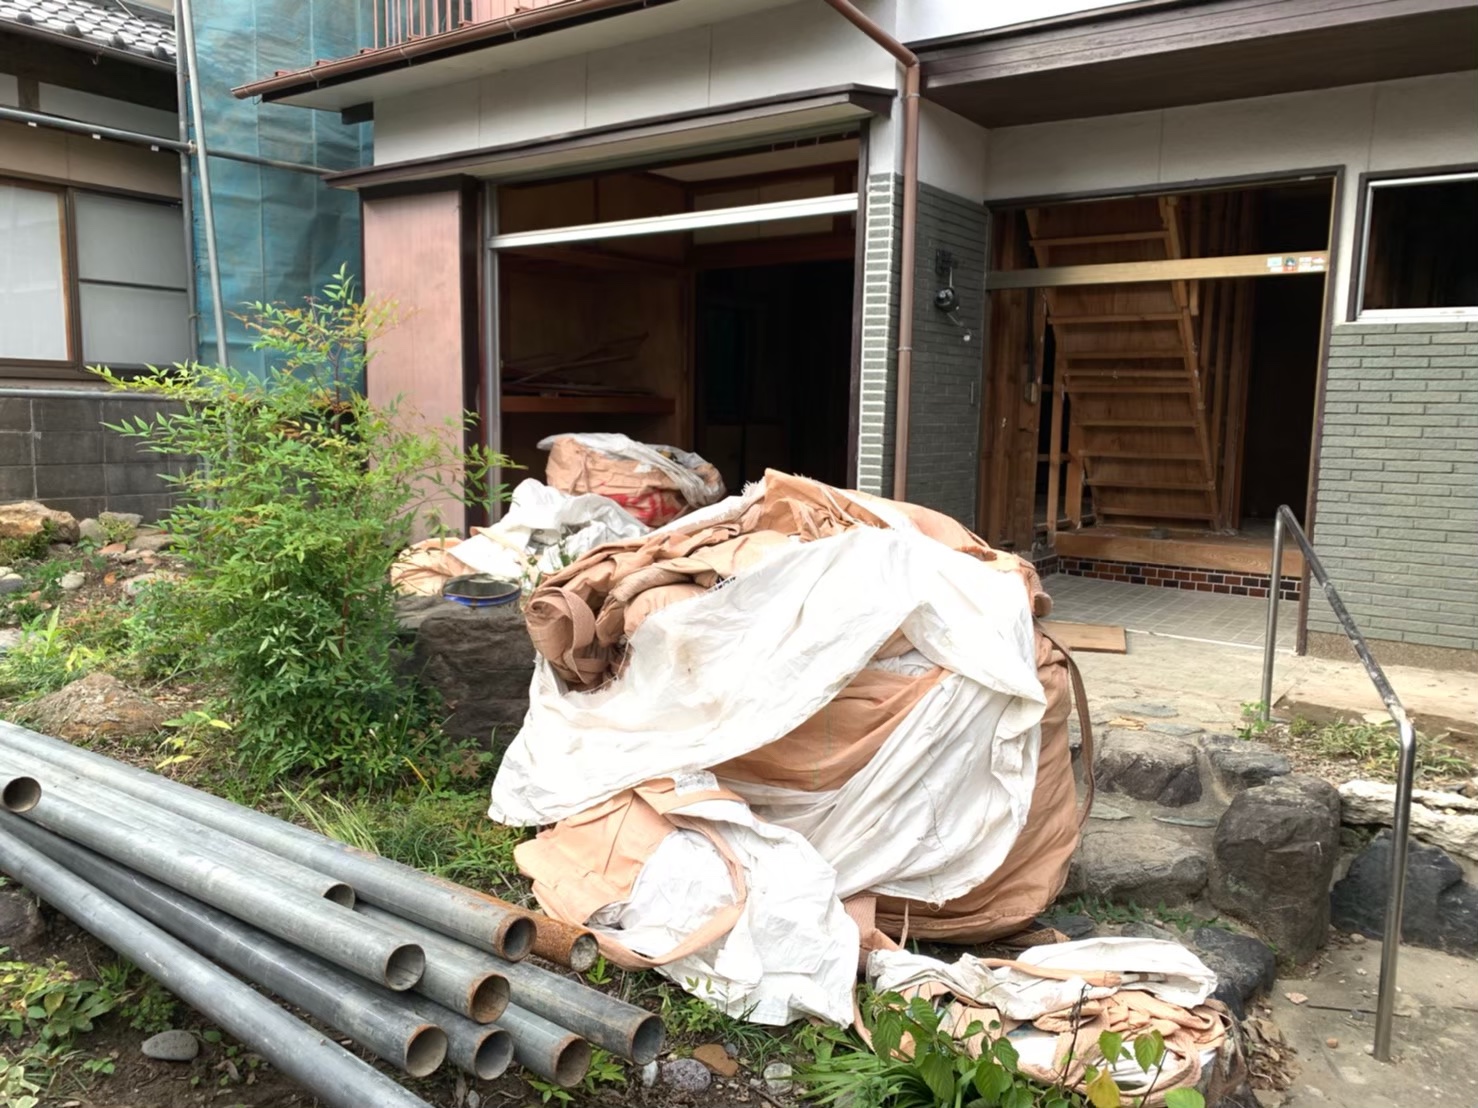 愛知県大府市の戸建て住宅解体工事の施工実績 住んでいない家の解体・撤去作業を行いました。最後に整地作業してお引渡しとなります。 パートナーホーム株式会社|パートナーホーム